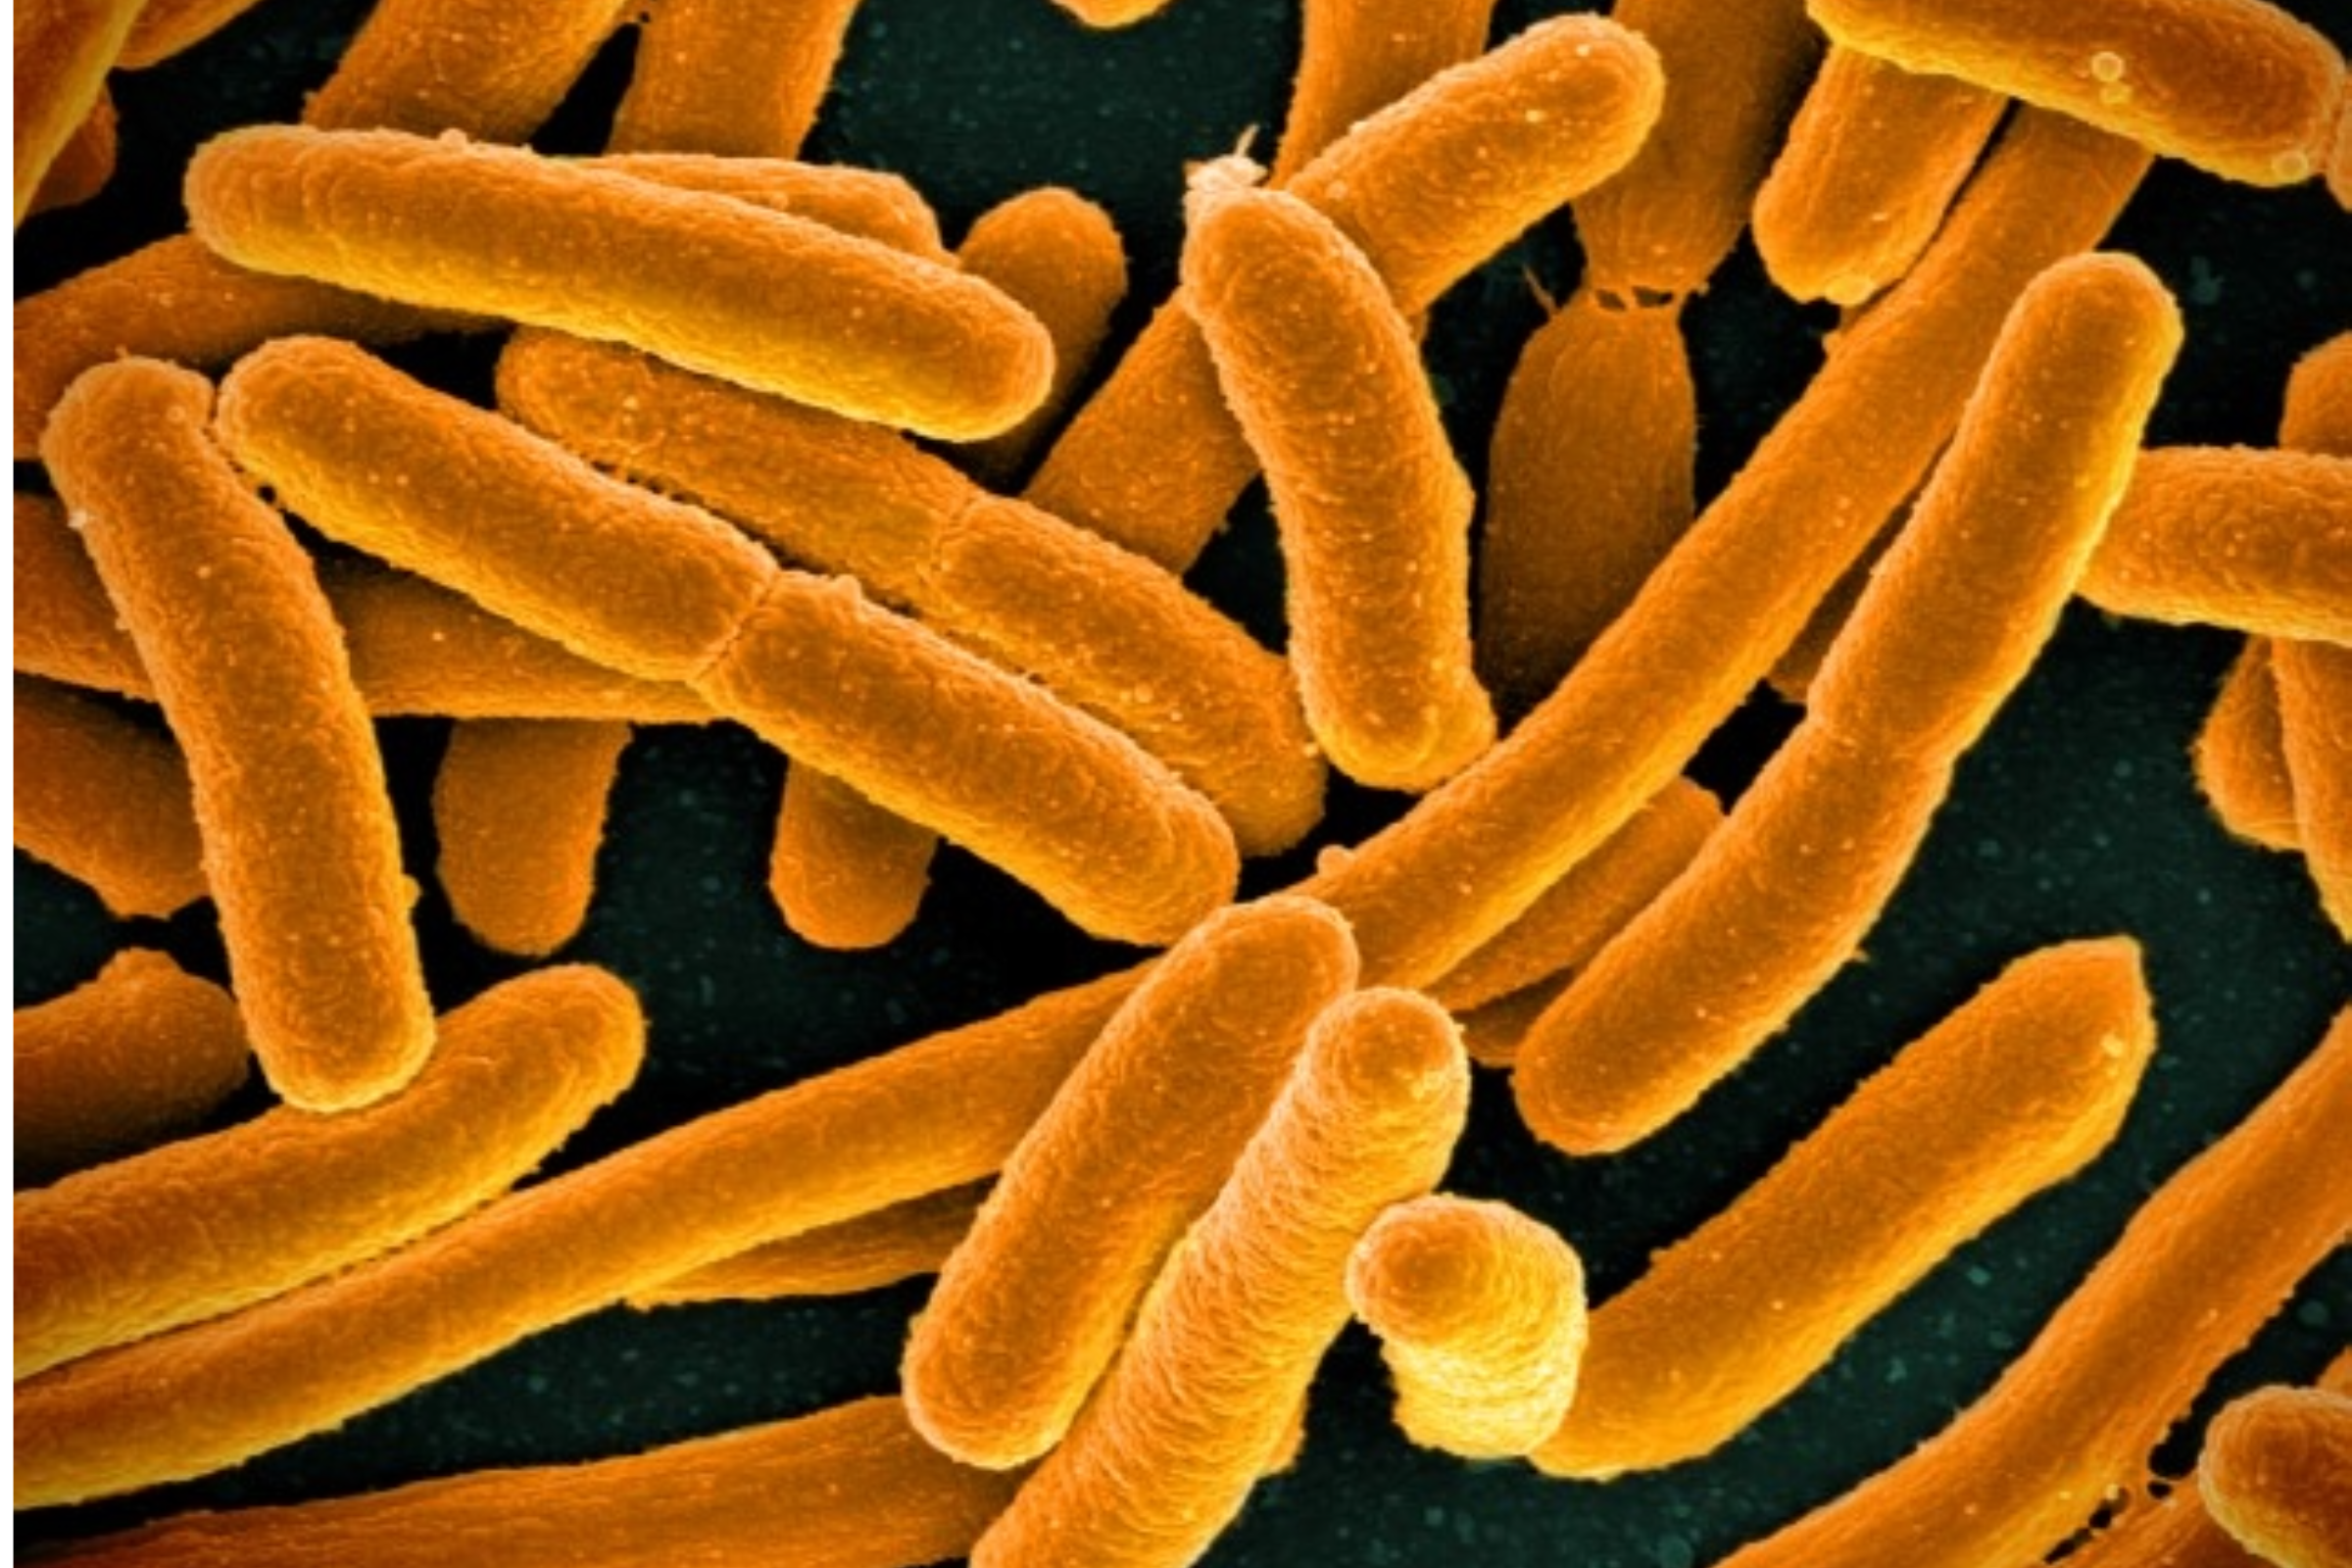 Microscopic image of E.coli bacteria